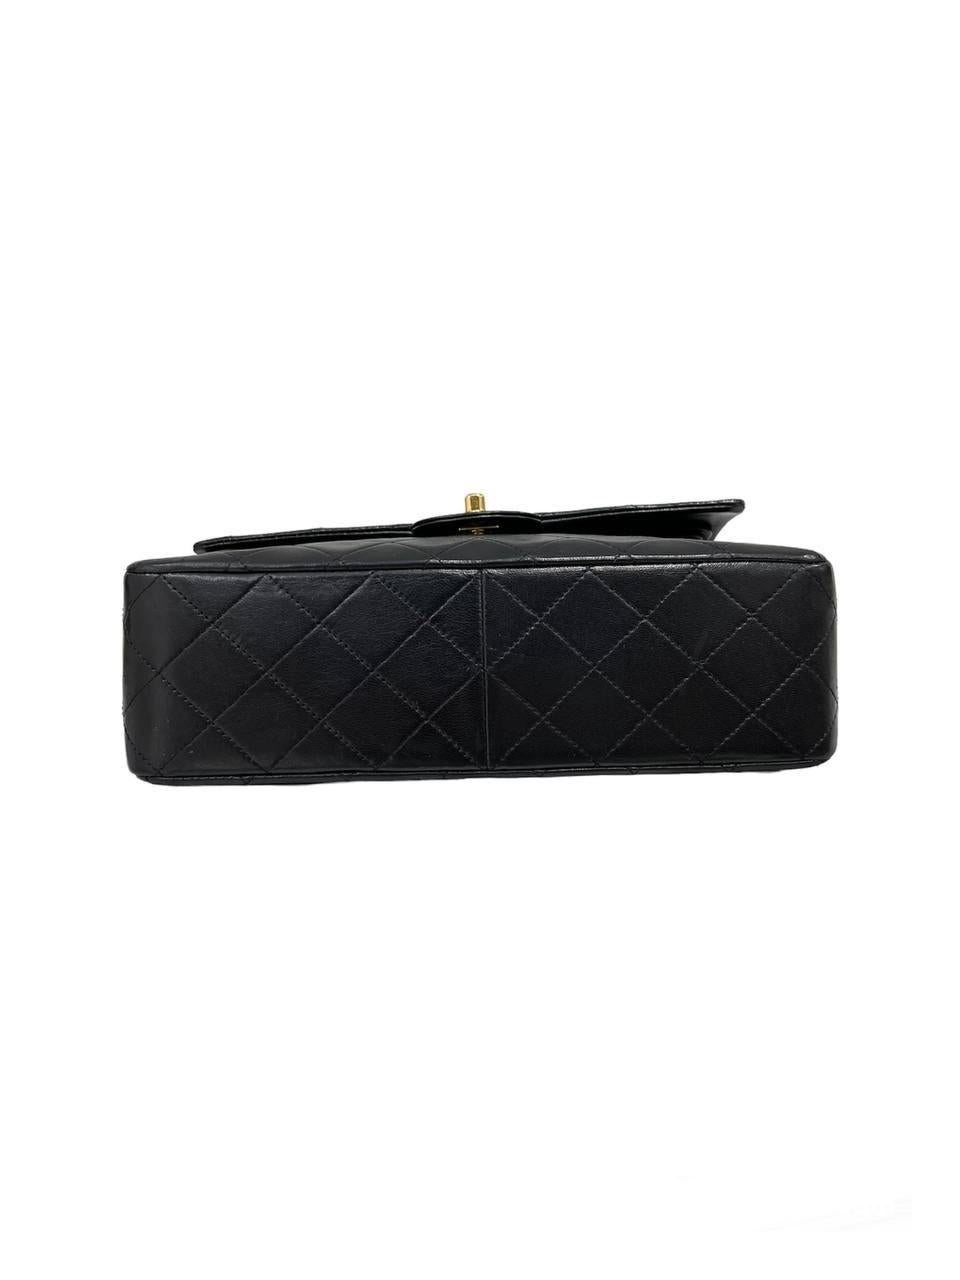   1989 Chanel Flap Black Leather Vintage Top Handle Bag Pour femmes 